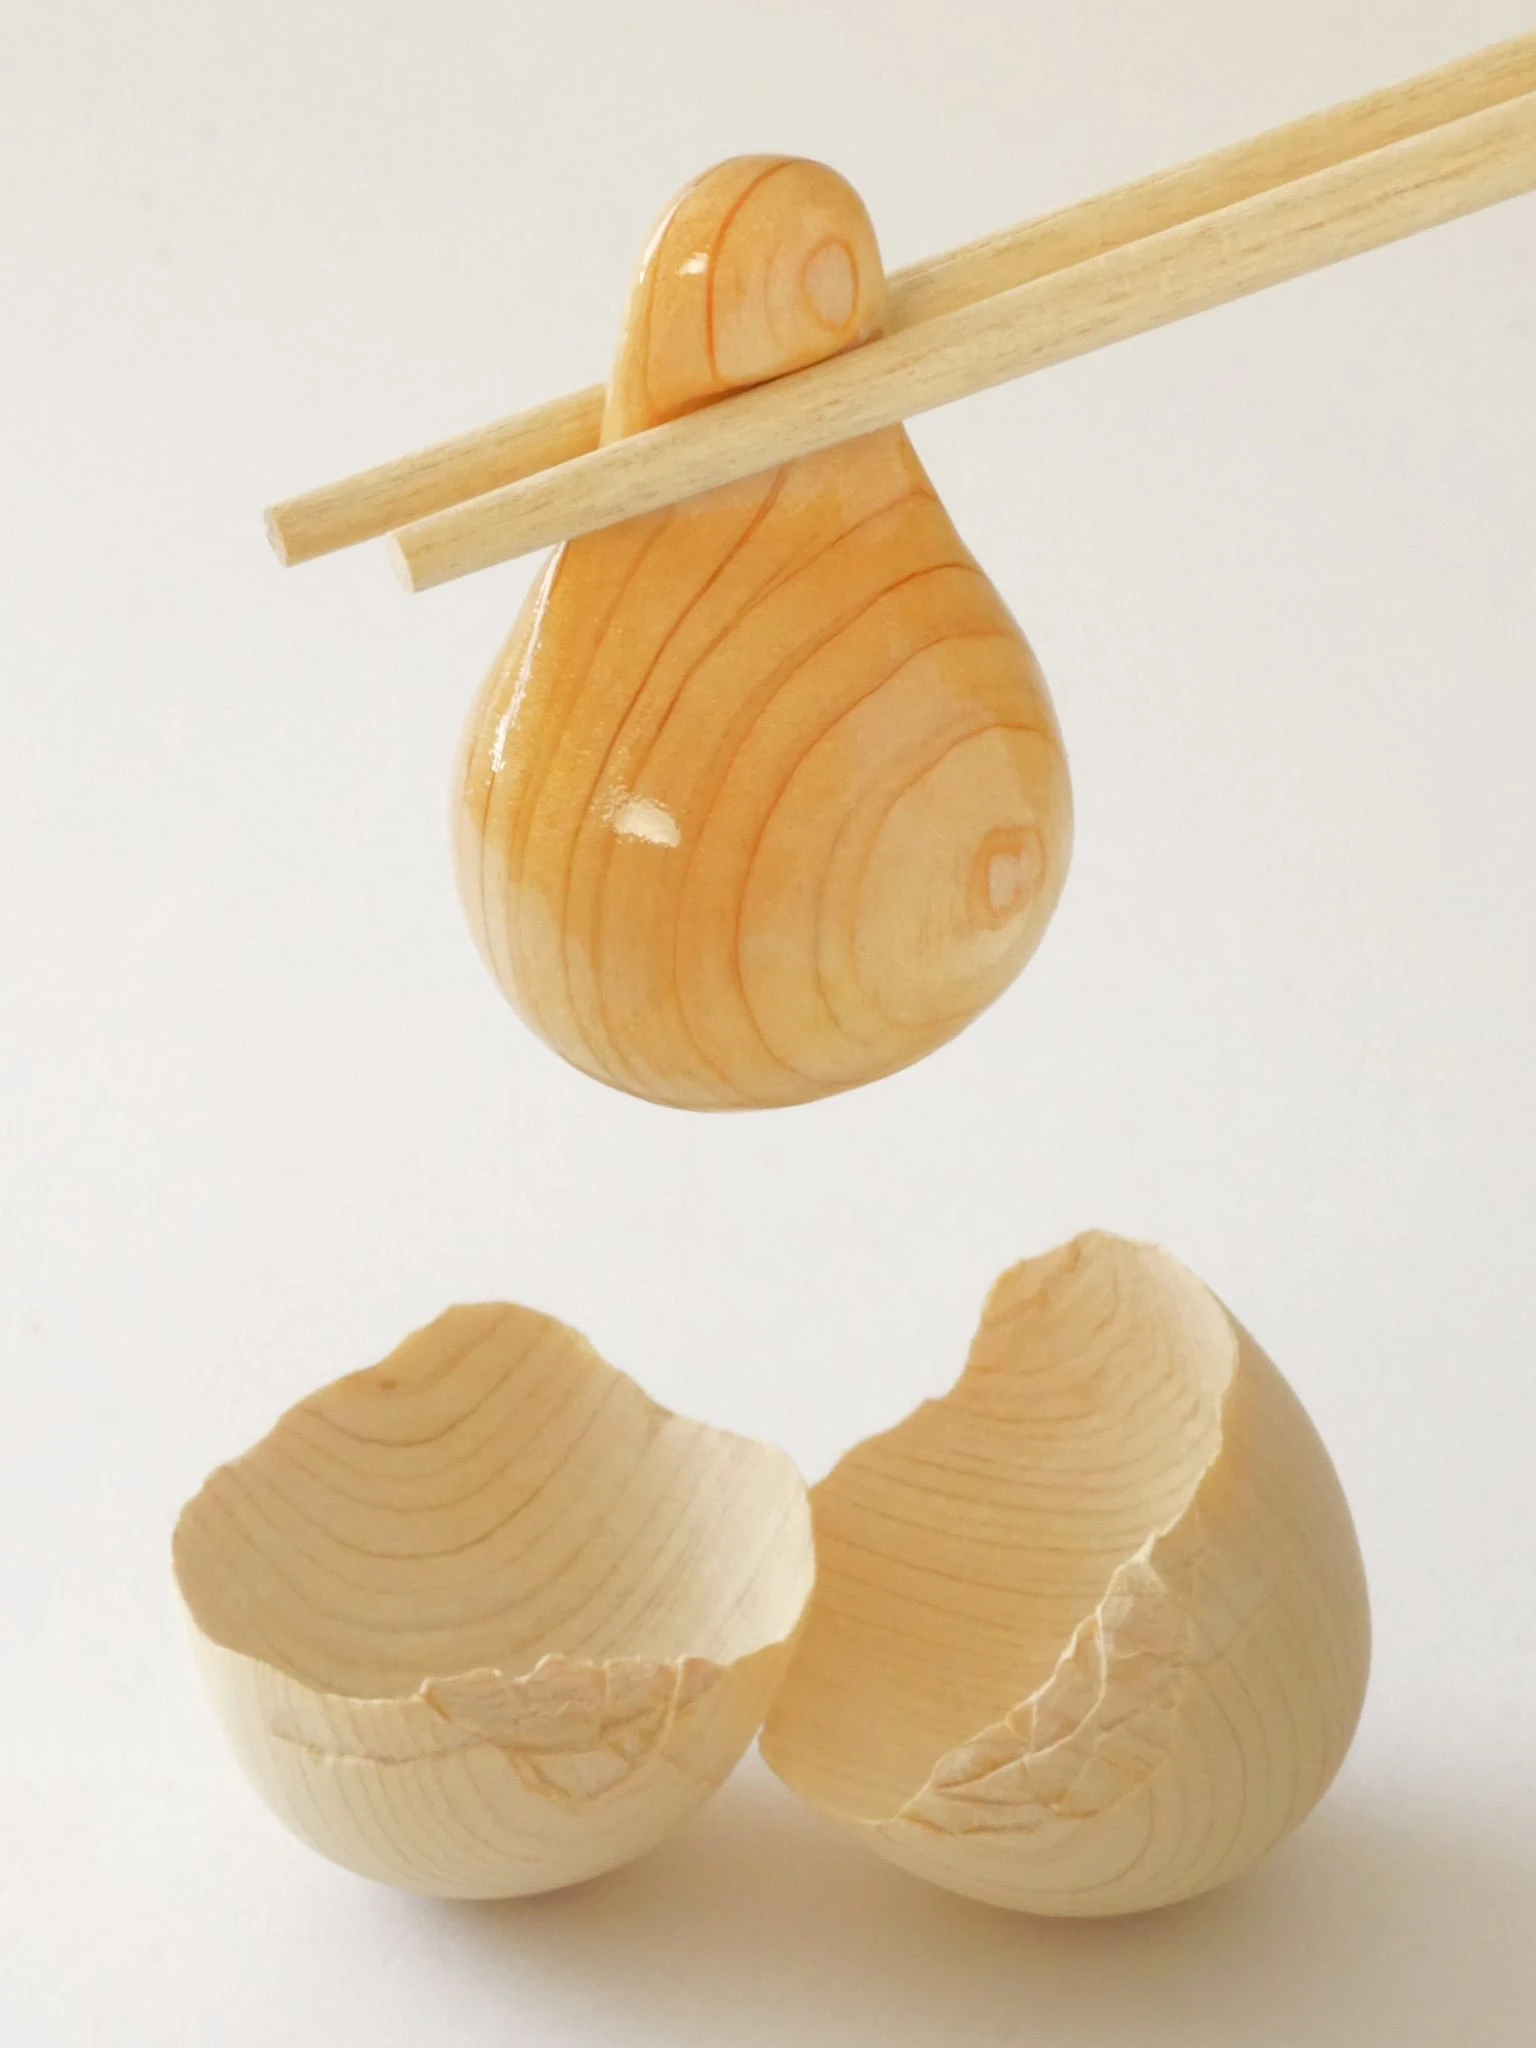 木なのにプルプル！ まさかの「木彫りの生卵」割れた殻のヒビもすごい